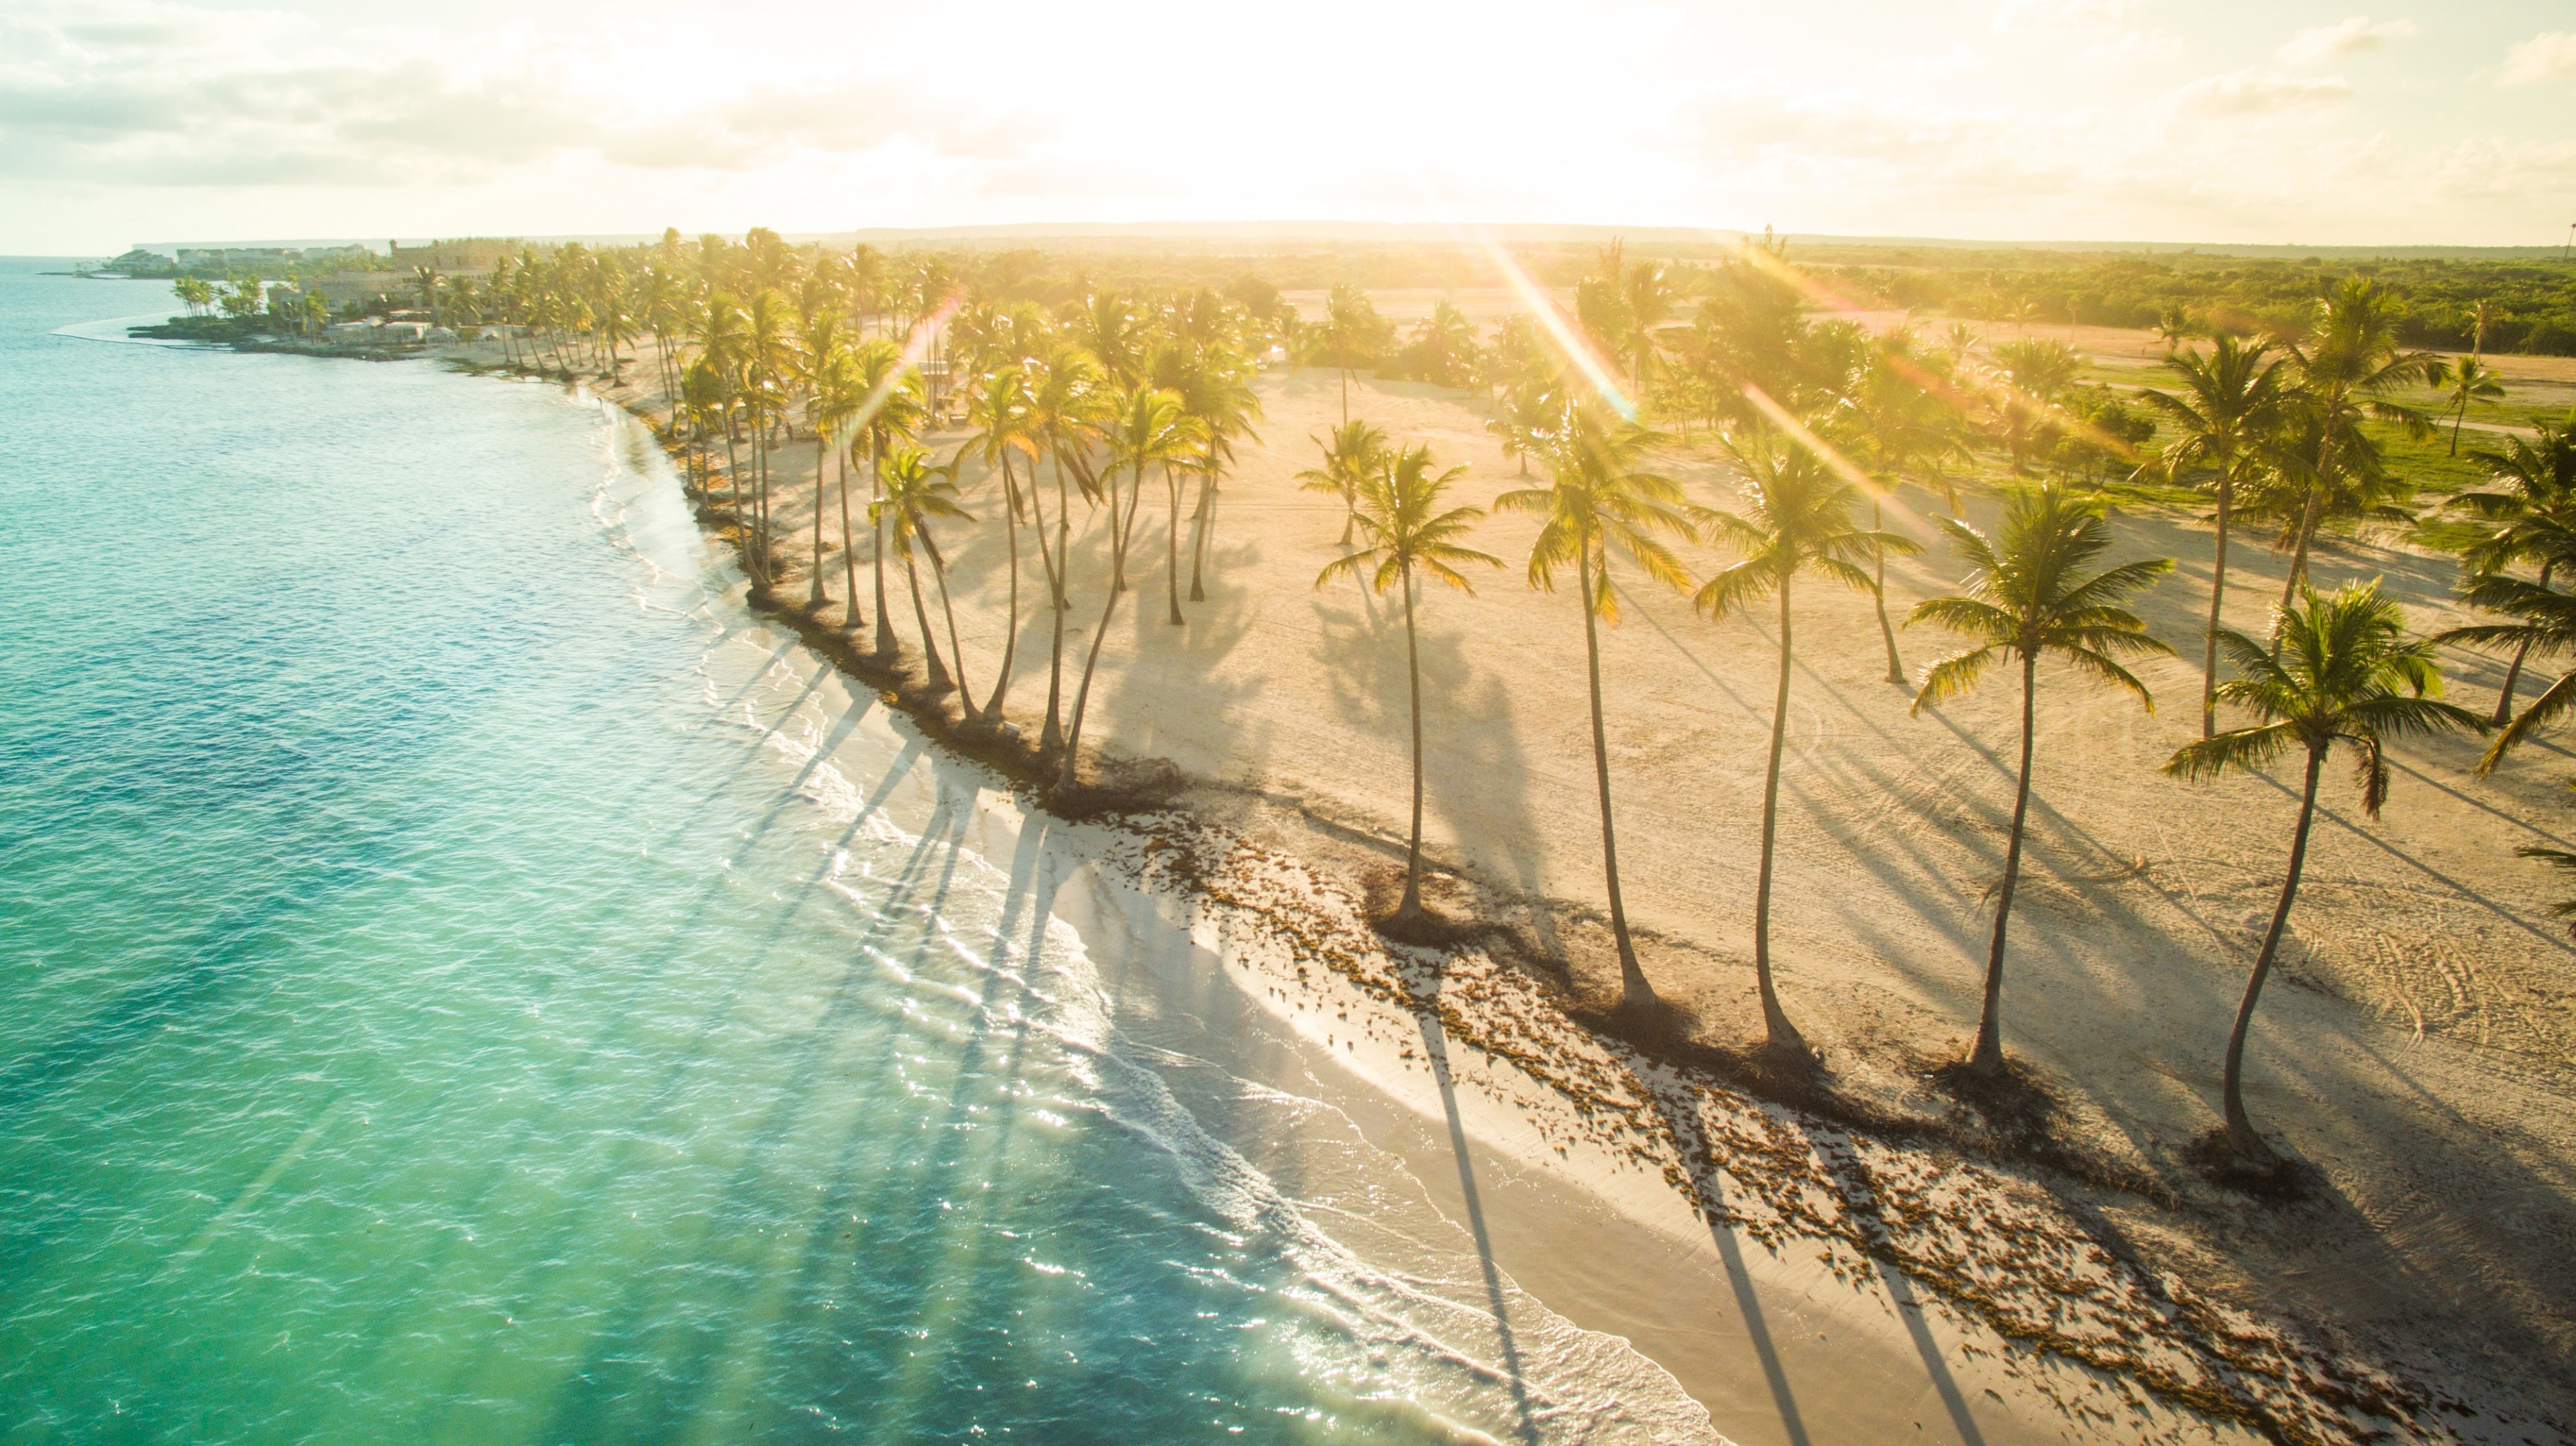 Profitez de votre séjour à Punta Cana pour vous détendre au bord de l'eau lors d'un détour par Plage de Juanillo.